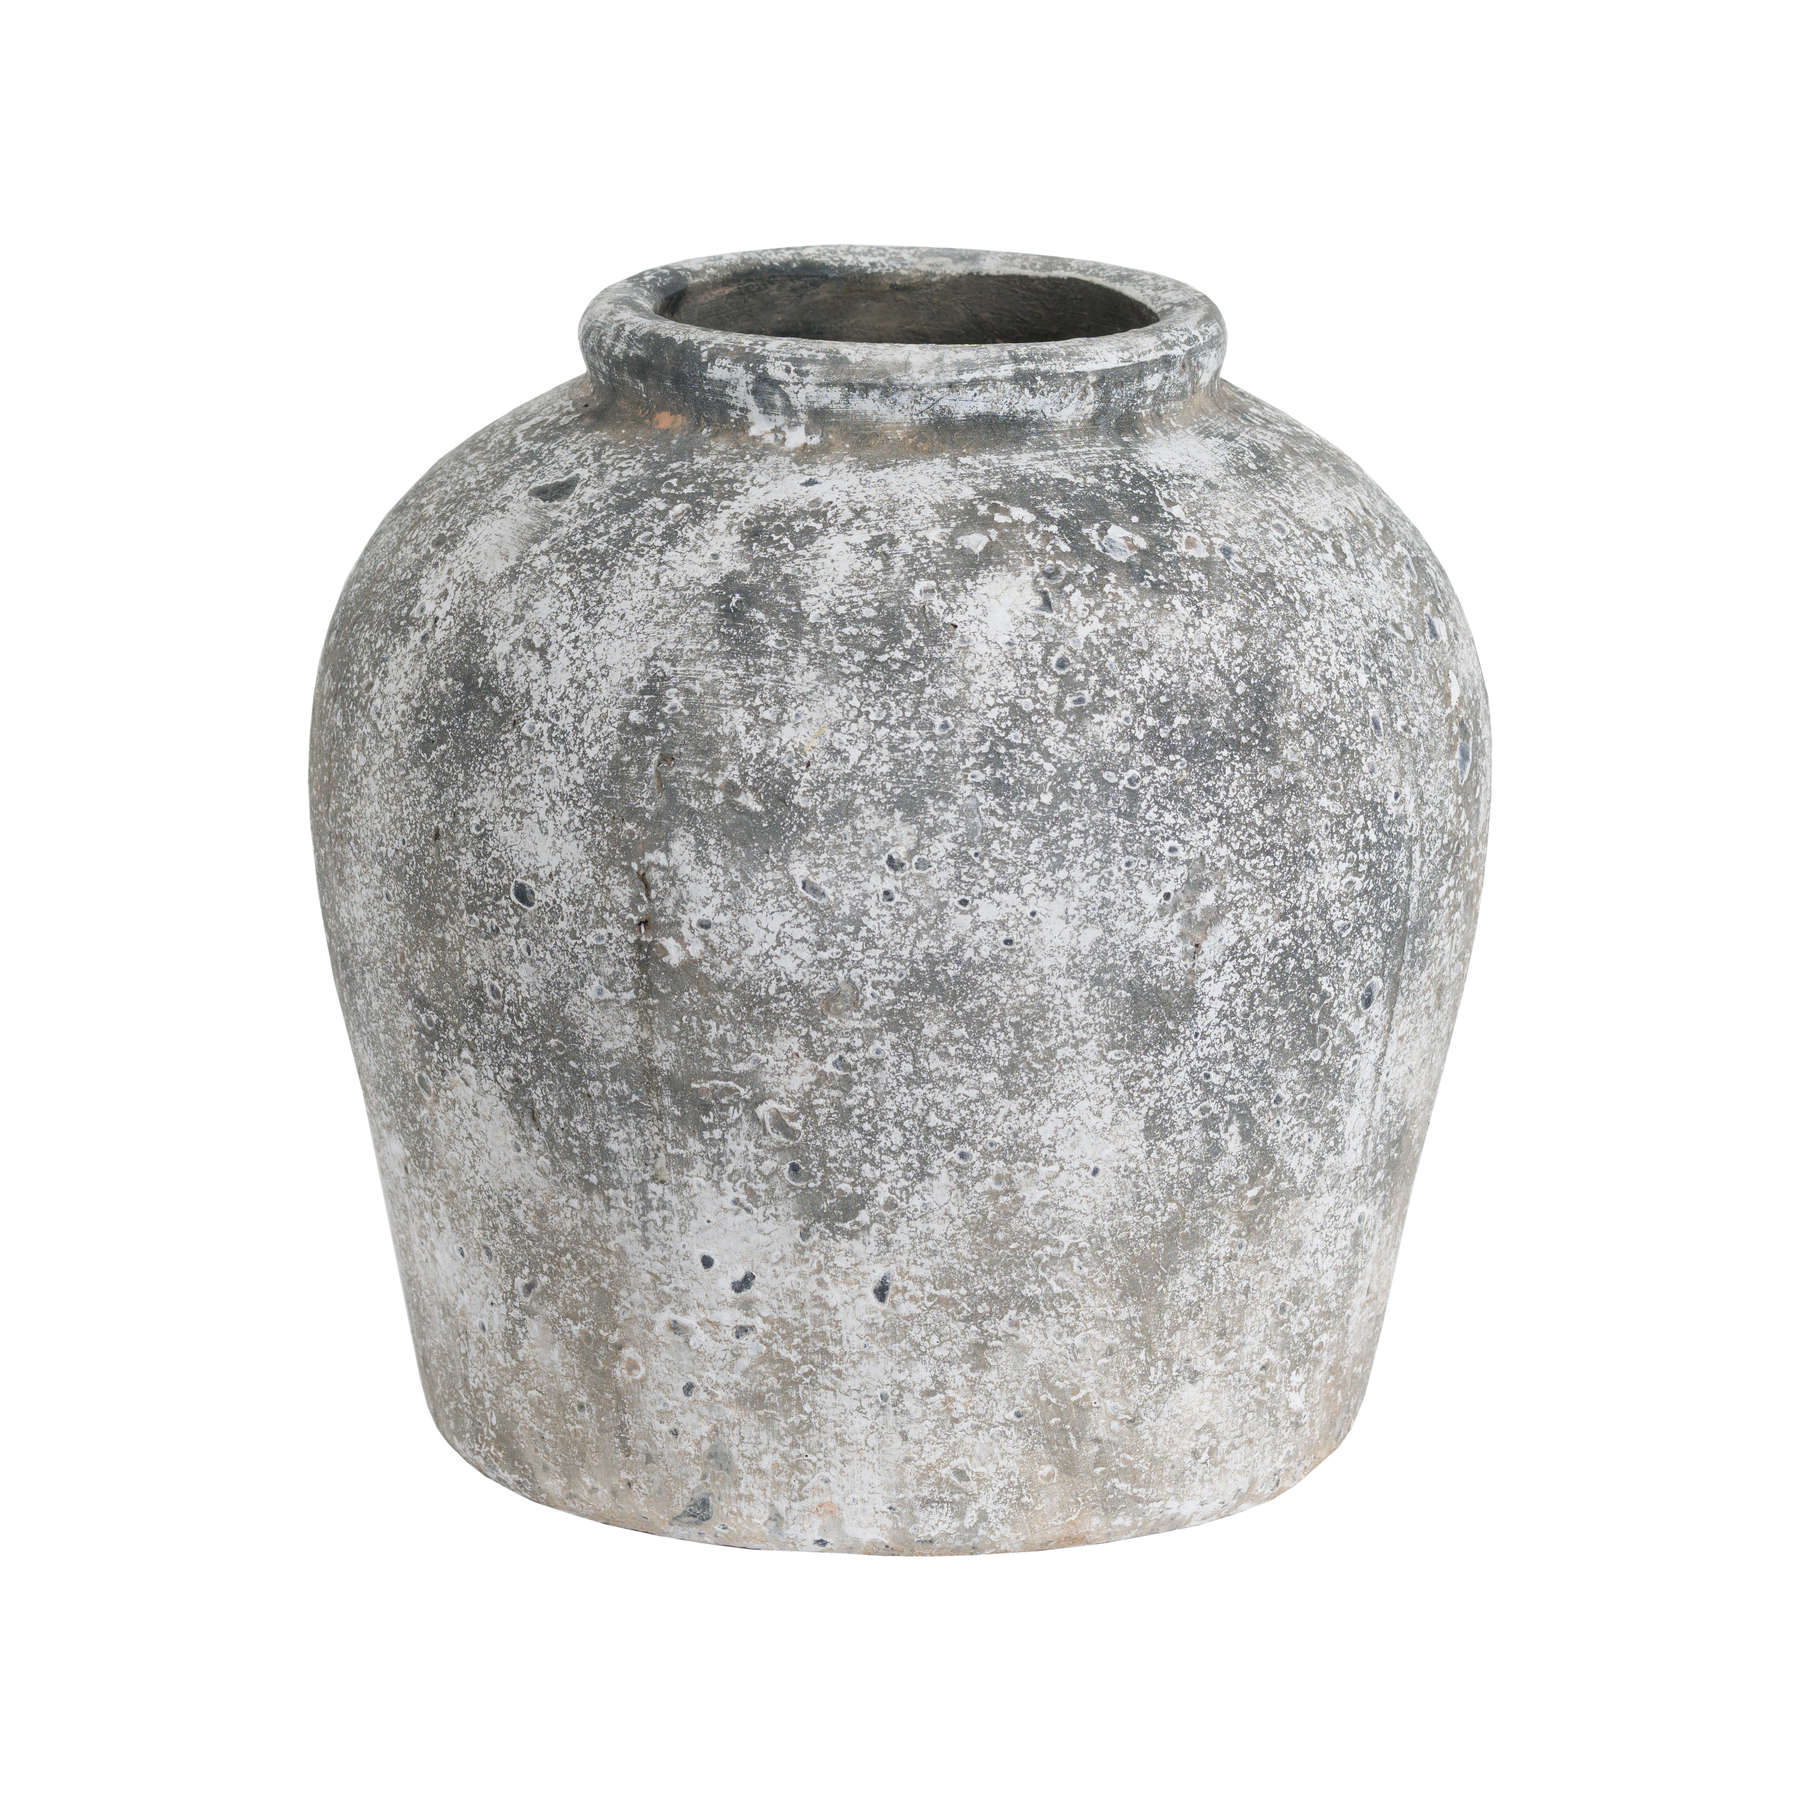 Aged Stone Ceramic Vase - Image 1